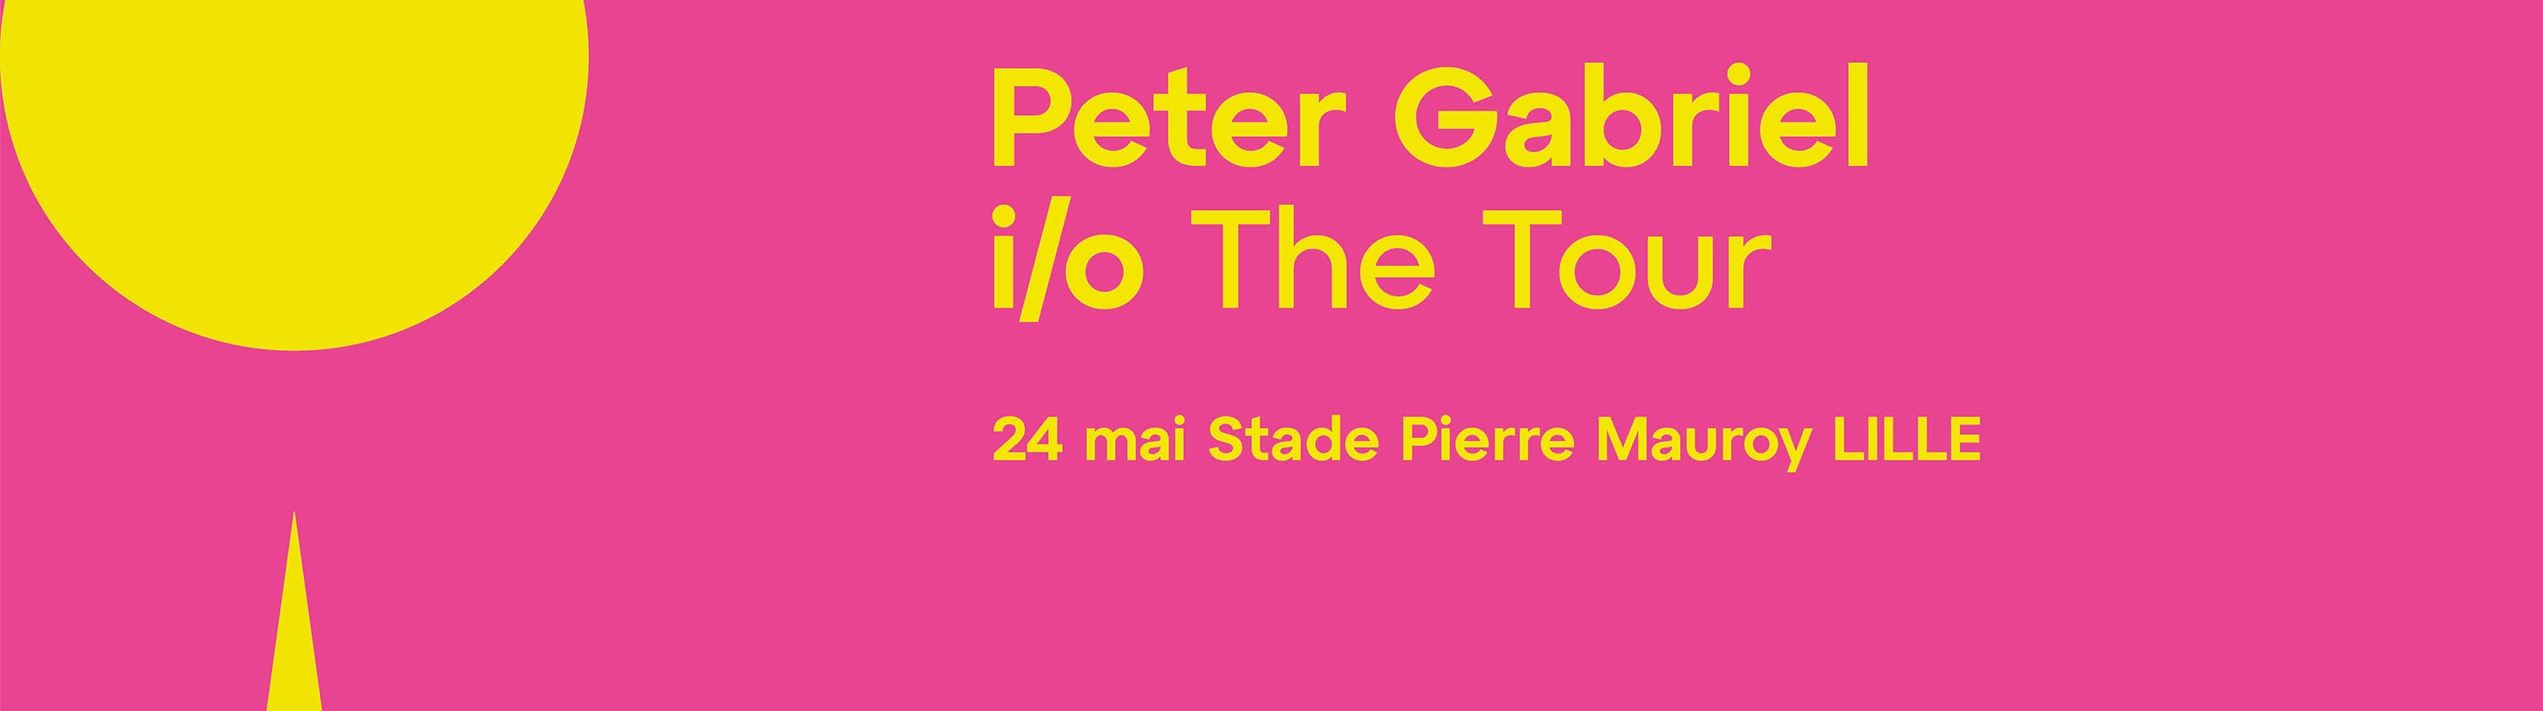 Concert - PETER GABRIEL